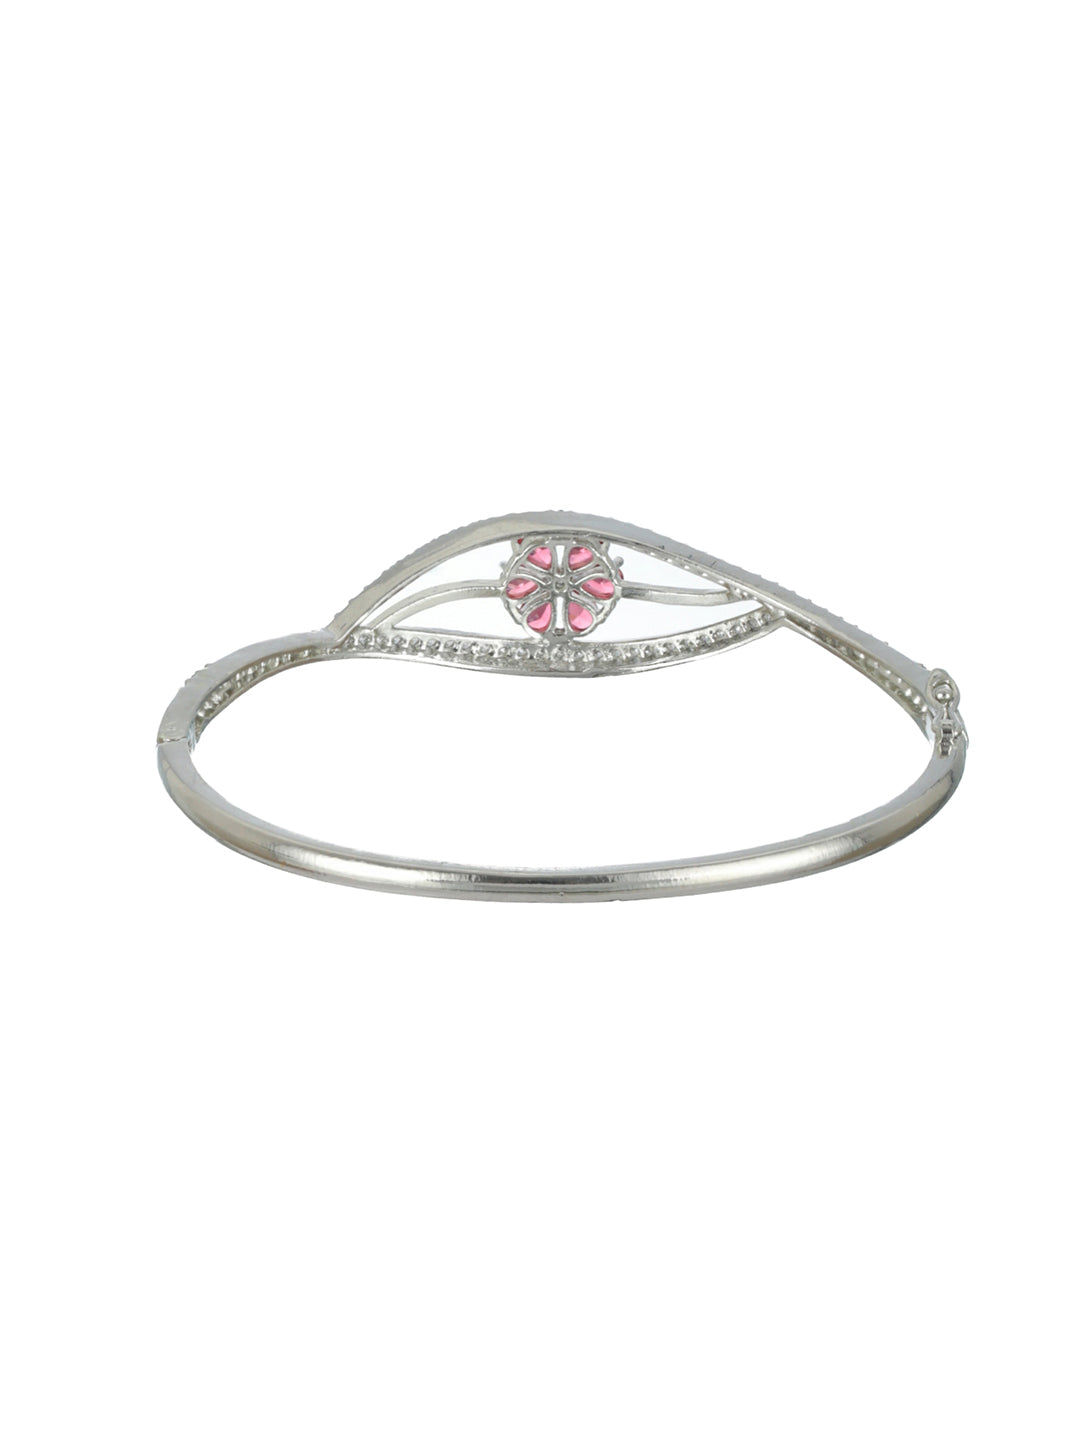 Priyaasi Pink Floral Leaf AD Silver-Plated Bracelet